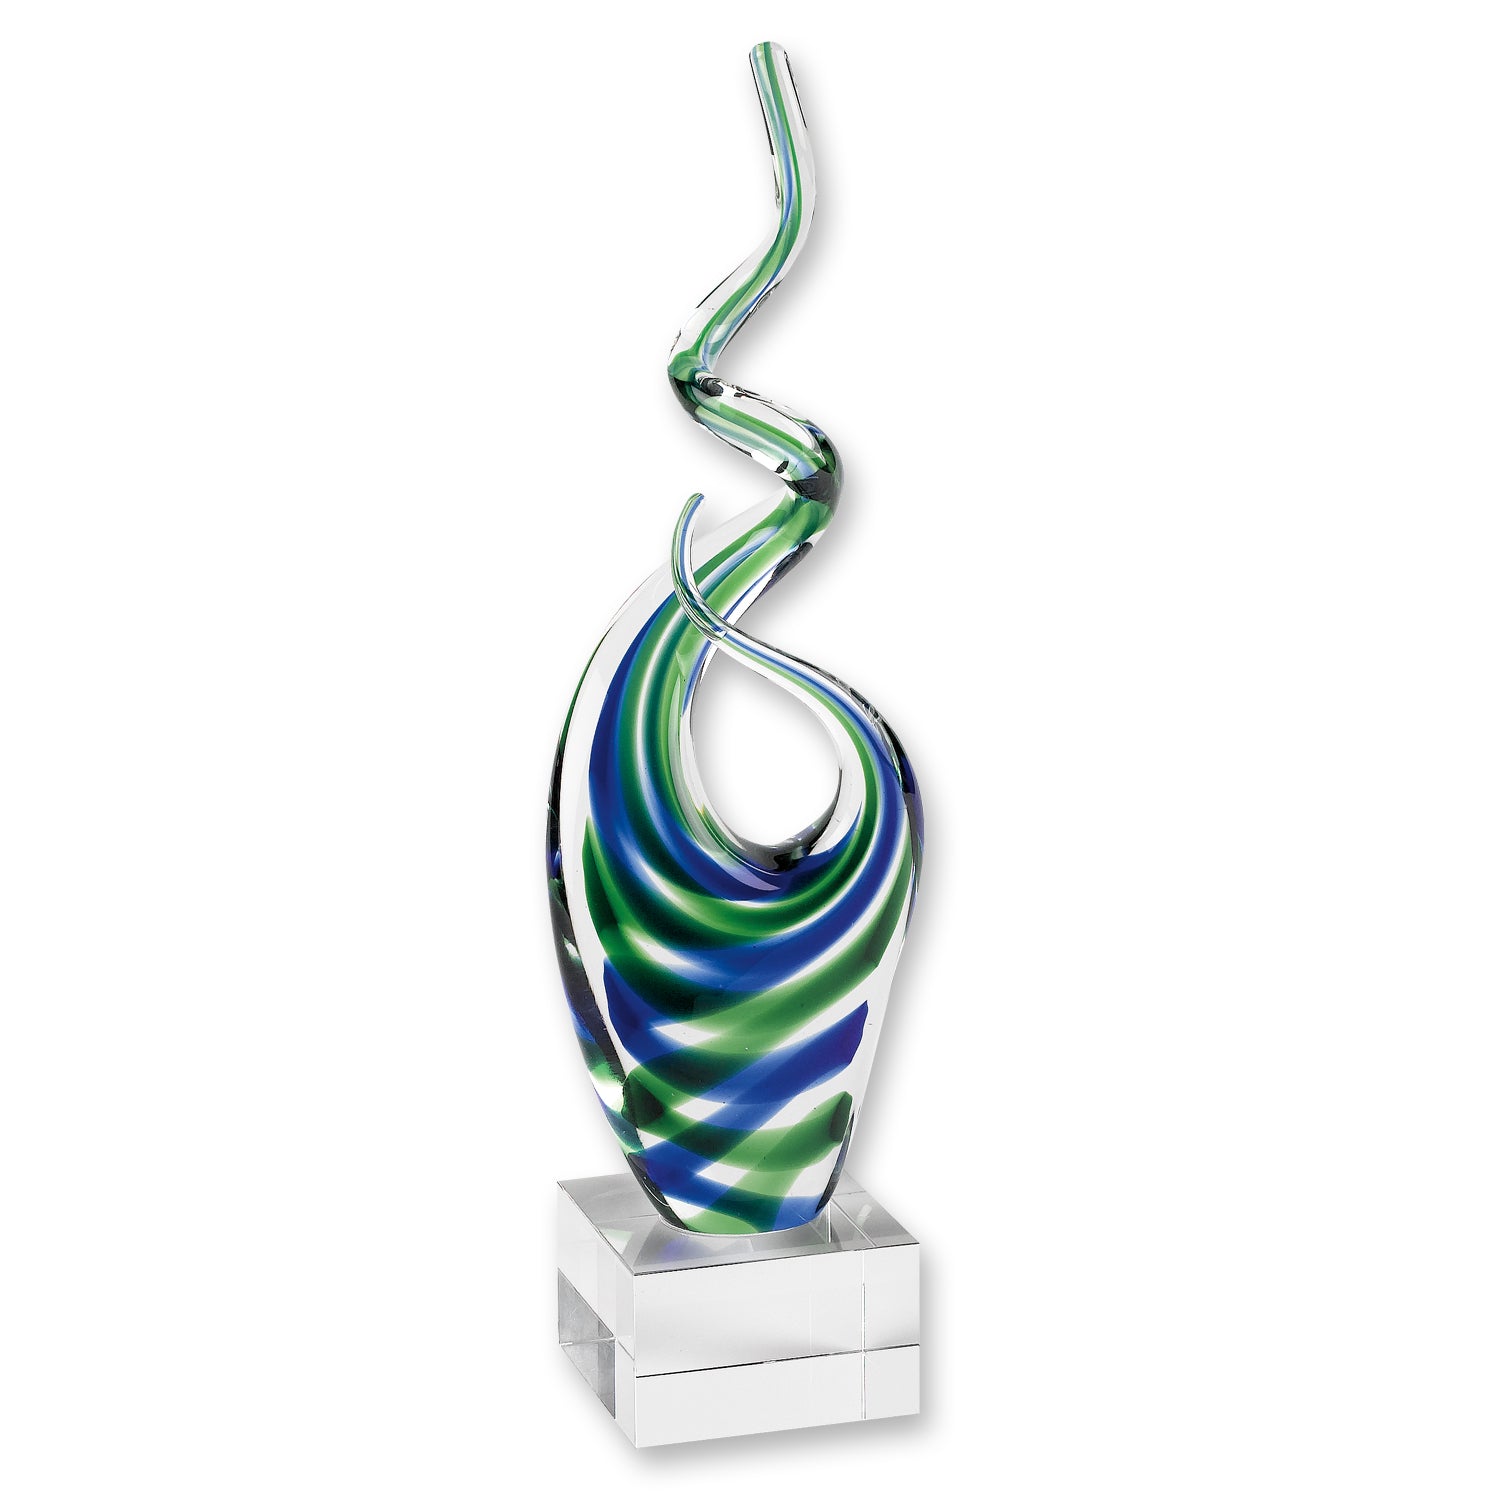 14 Multicolor Glass Art Glass Centerpiece